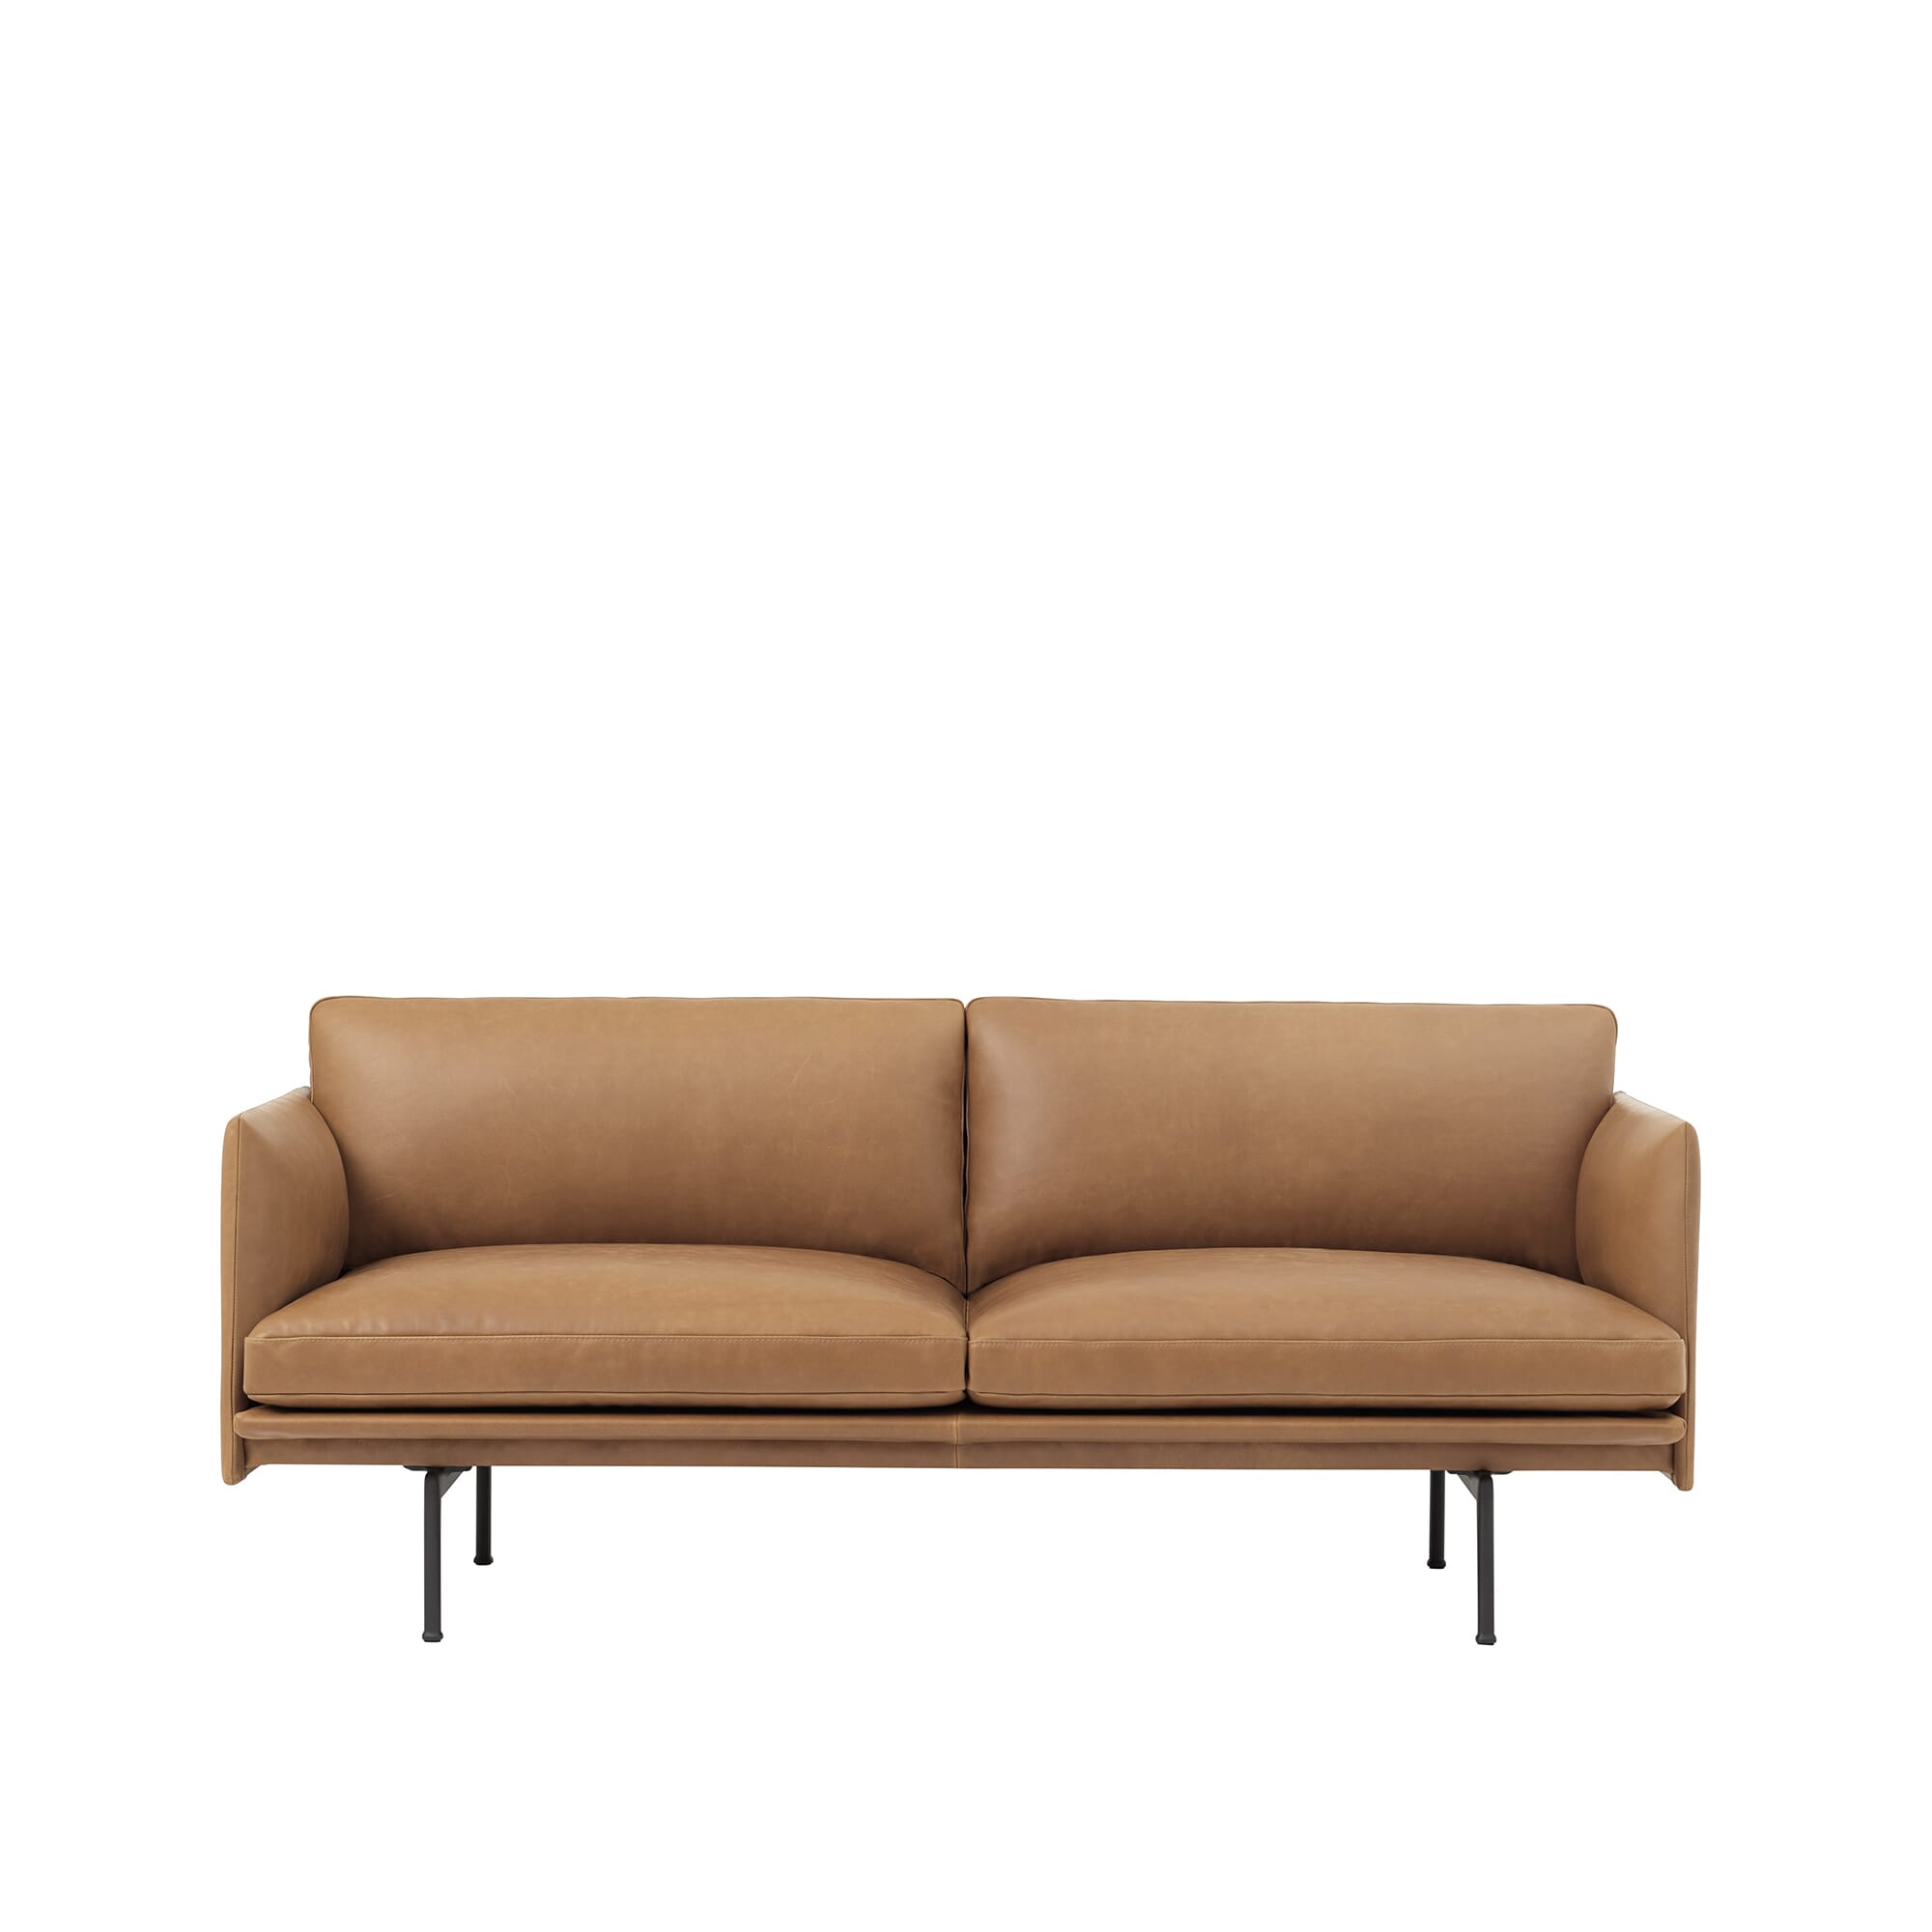 Bilde av Muuto - Muuto Outline Sofa 2 Seter - Skinn - Lunehjem.no - Interiør På Nett